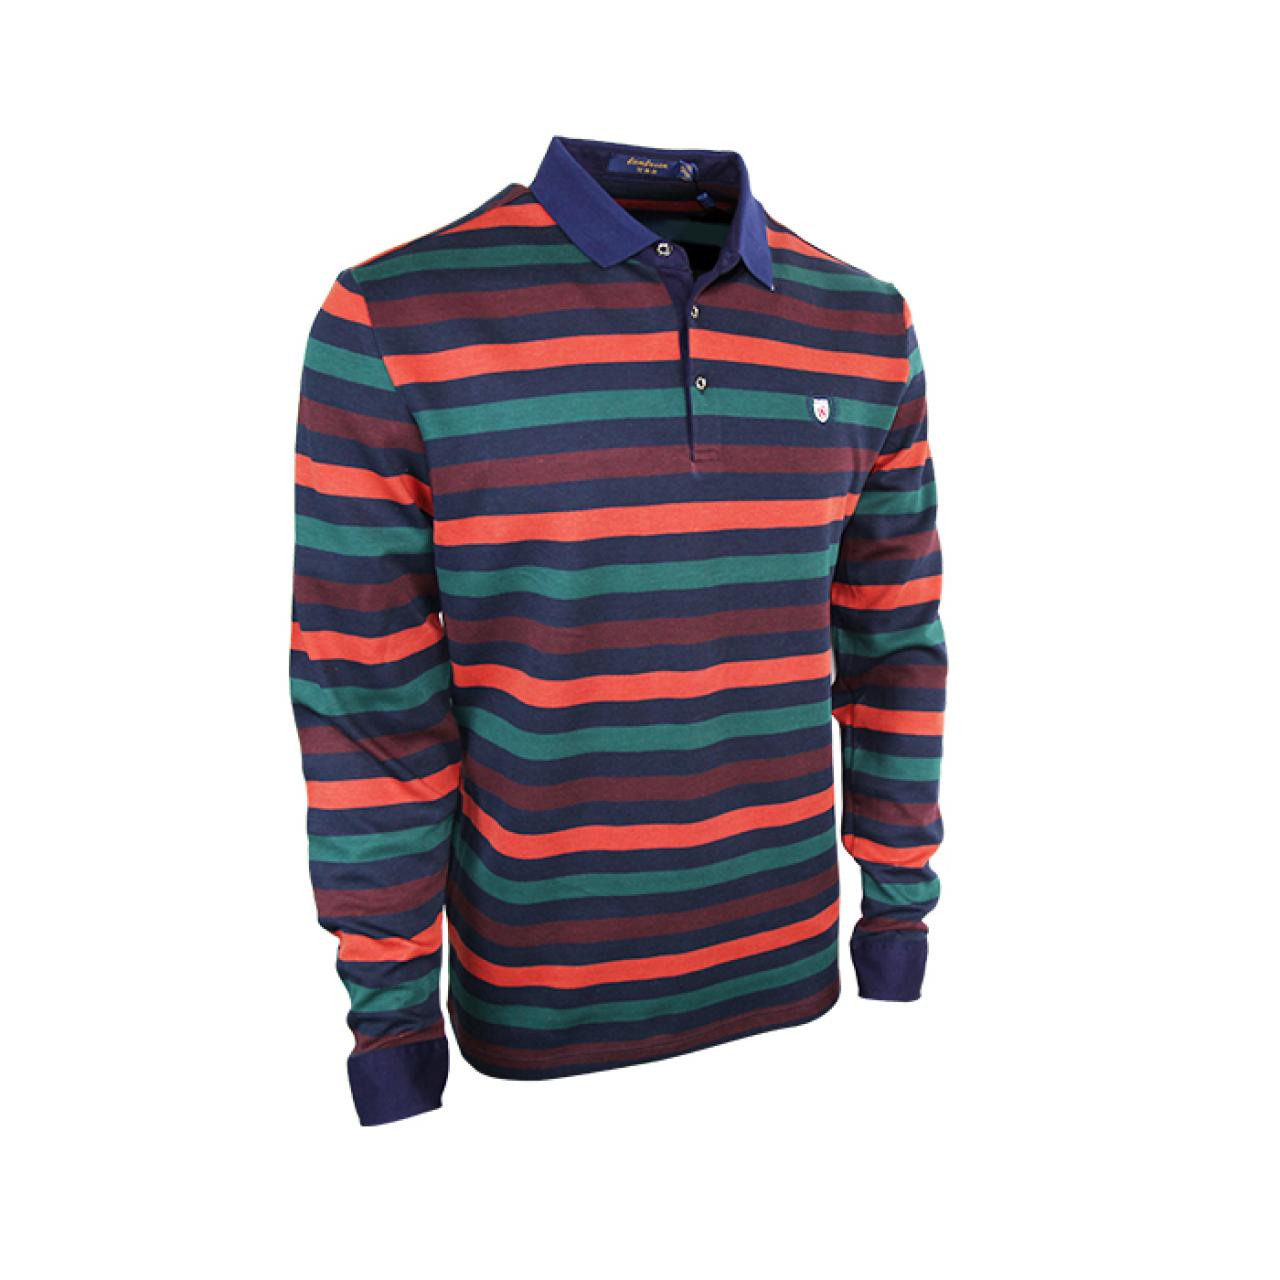 Full sleeve Multi Color Designer Shirt Polo